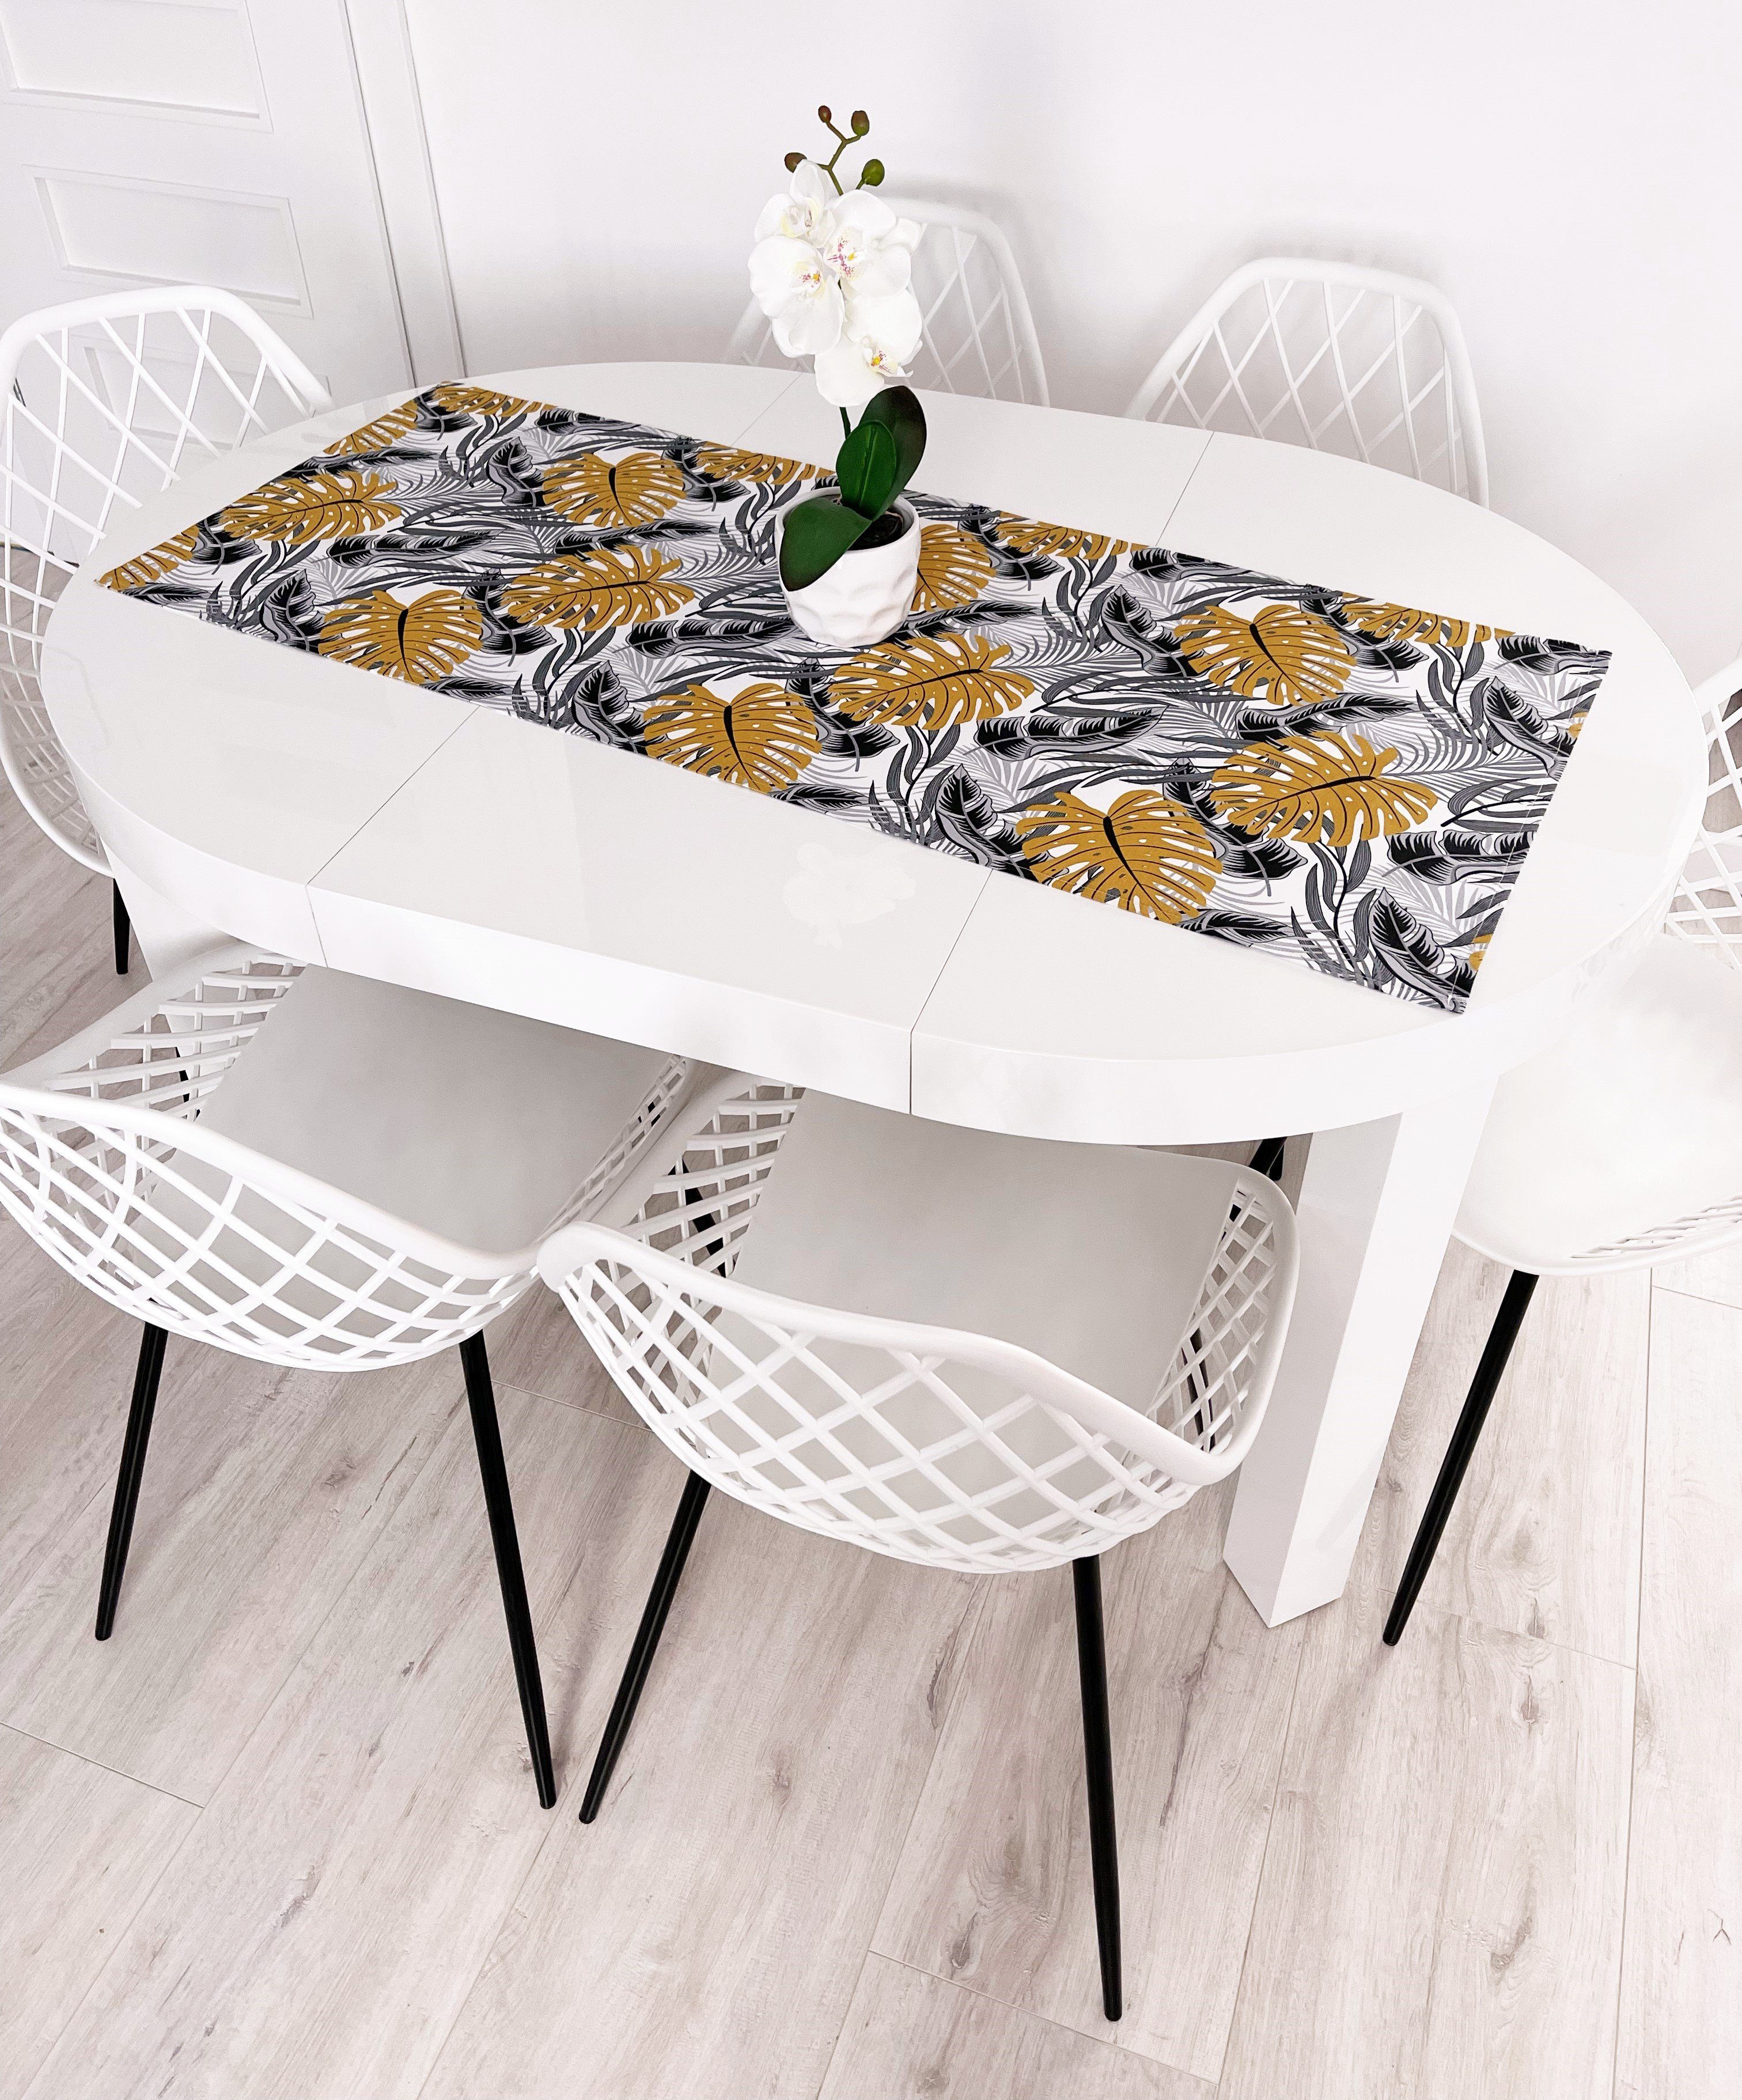 RoKo-Textilien Tischläufer Tischläufer Tischdecke Tischlaeufer 100% Maßen gedeckter 18 Baumwolle in verfügbar Tisch